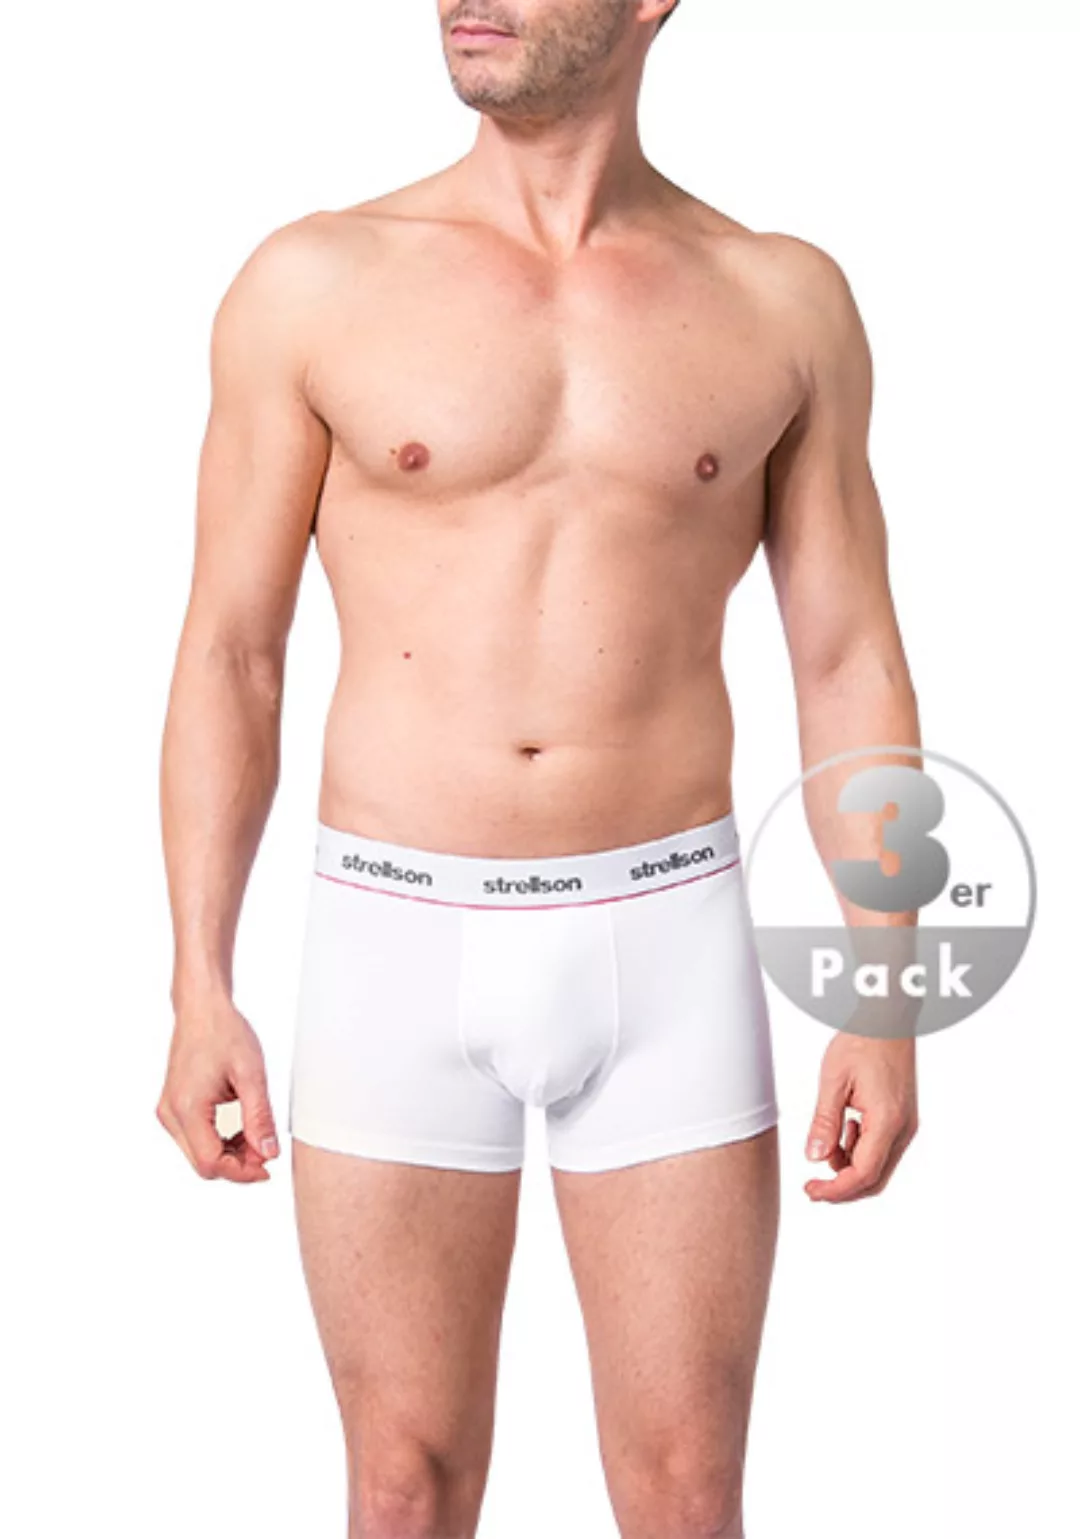 Strellson 3er Pack Shorts 531101/10 günstig online kaufen